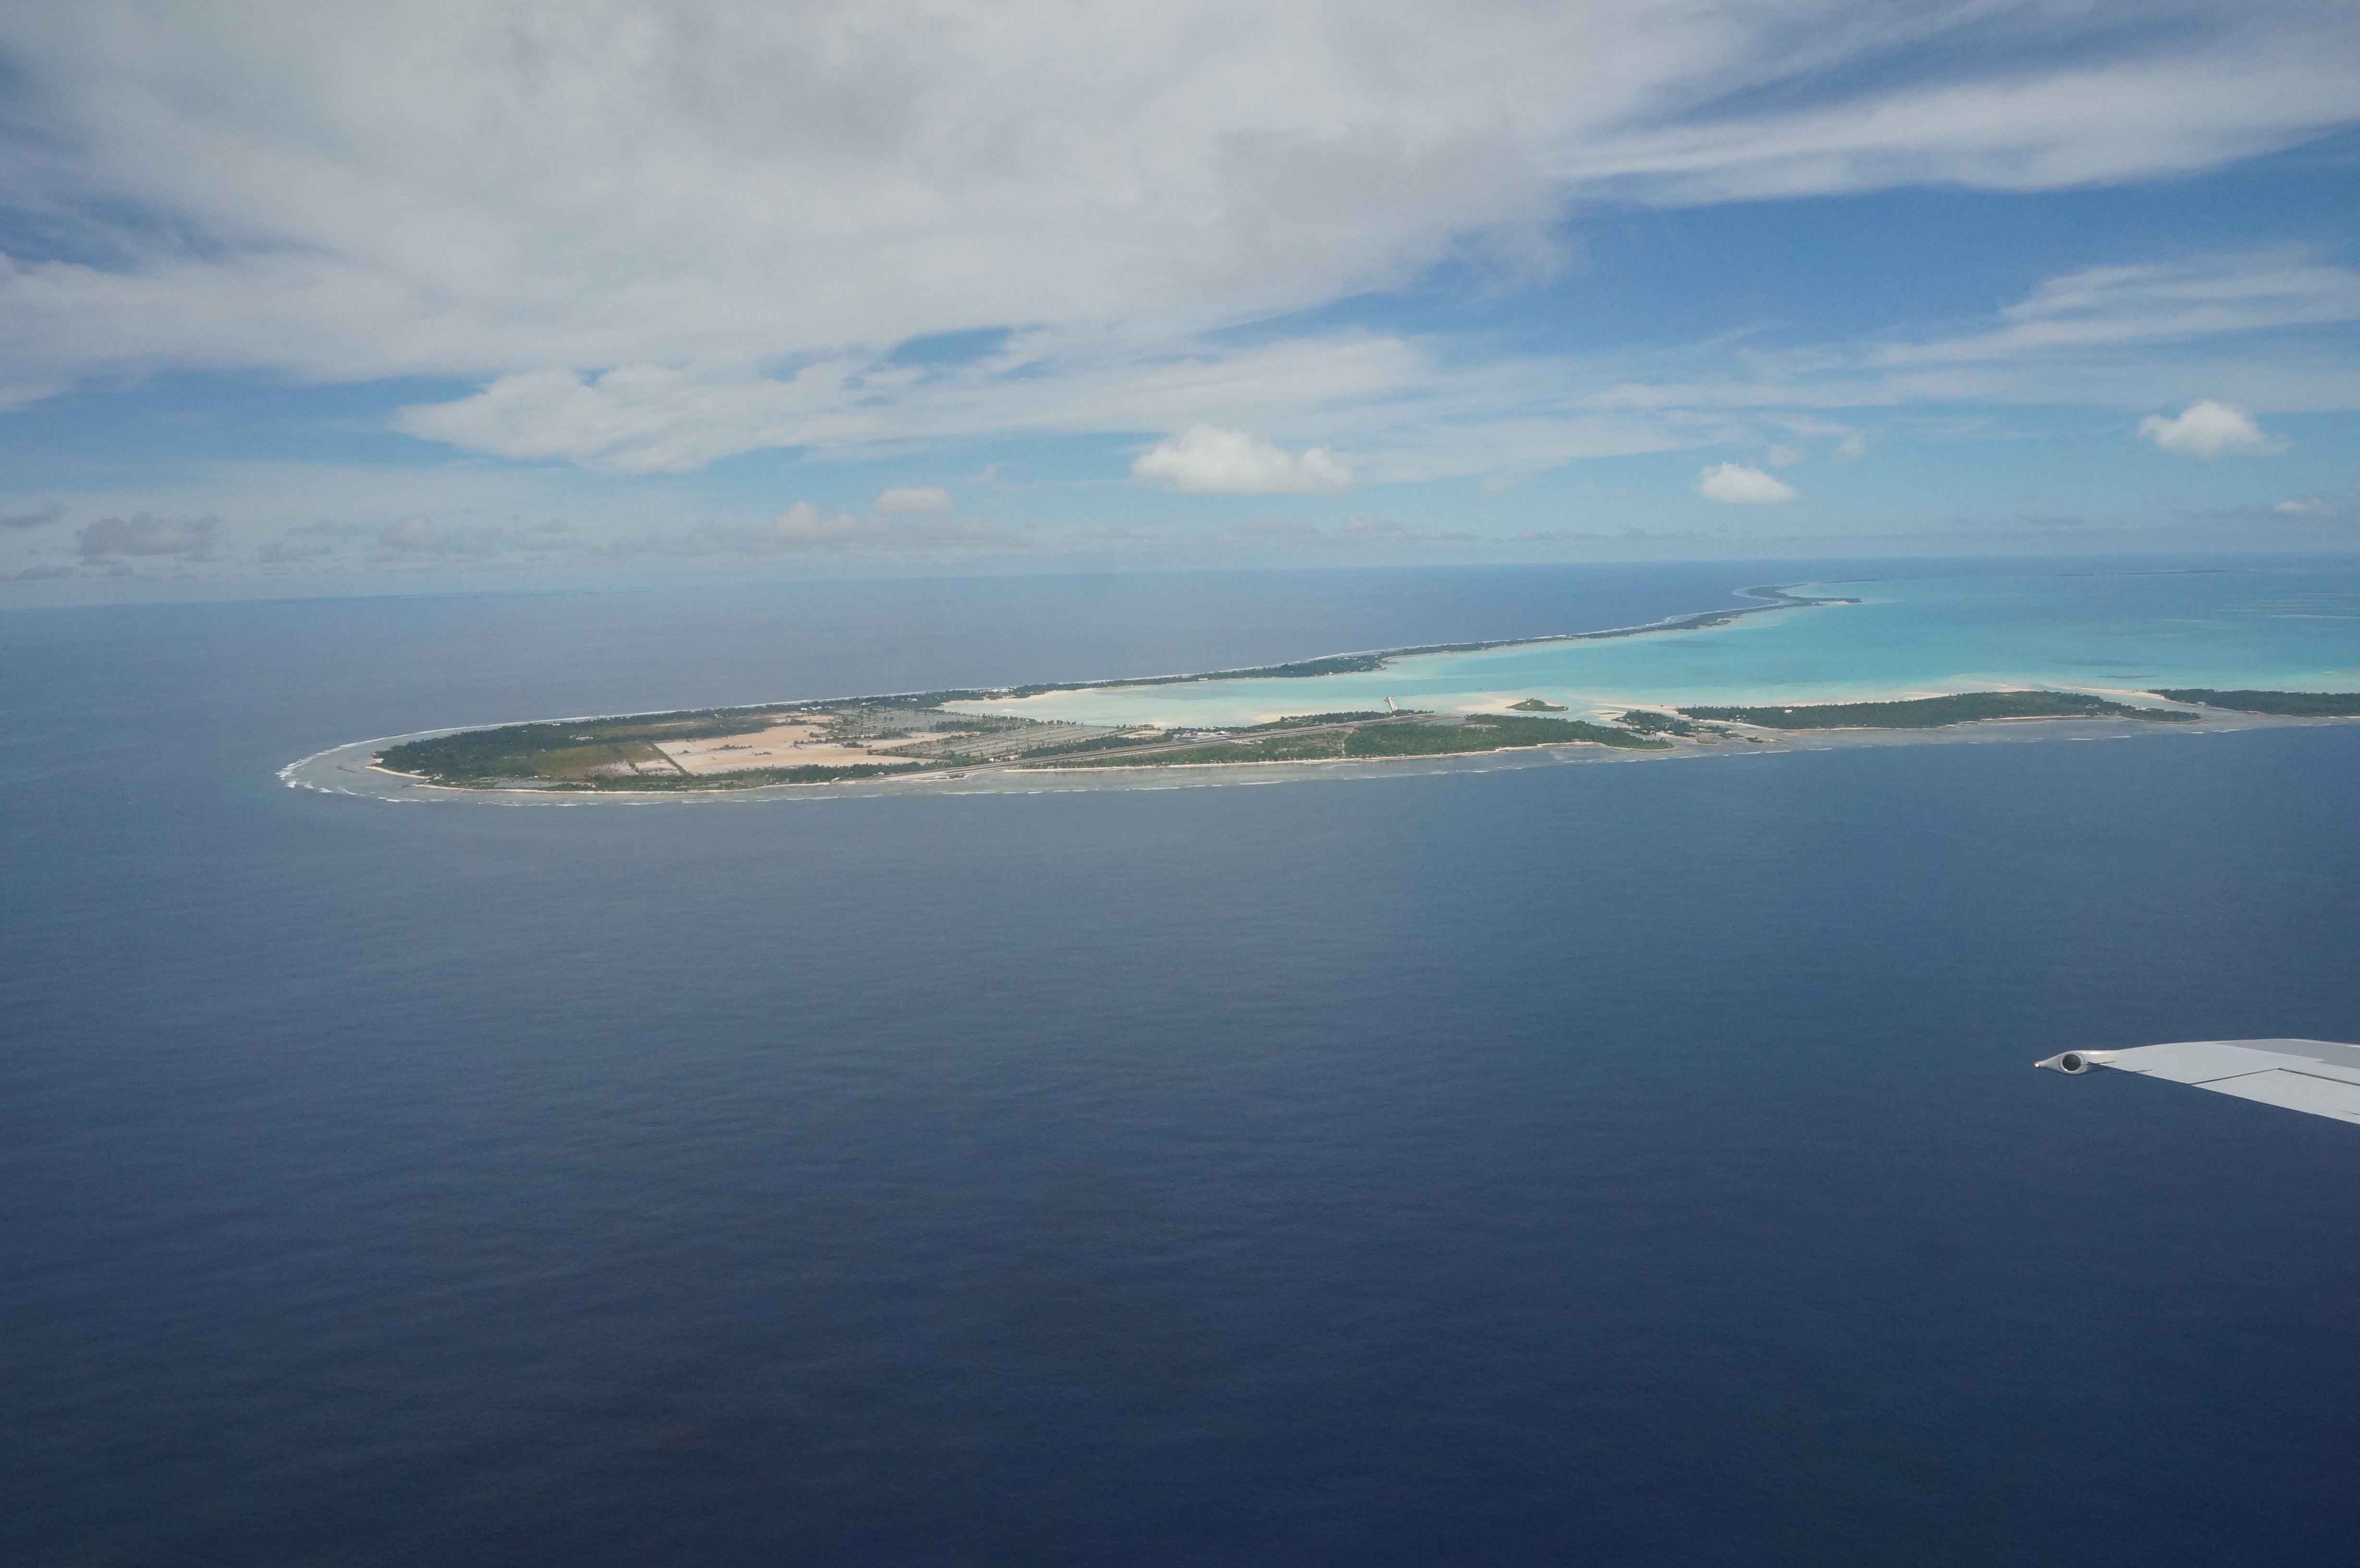 Tarawa from the air